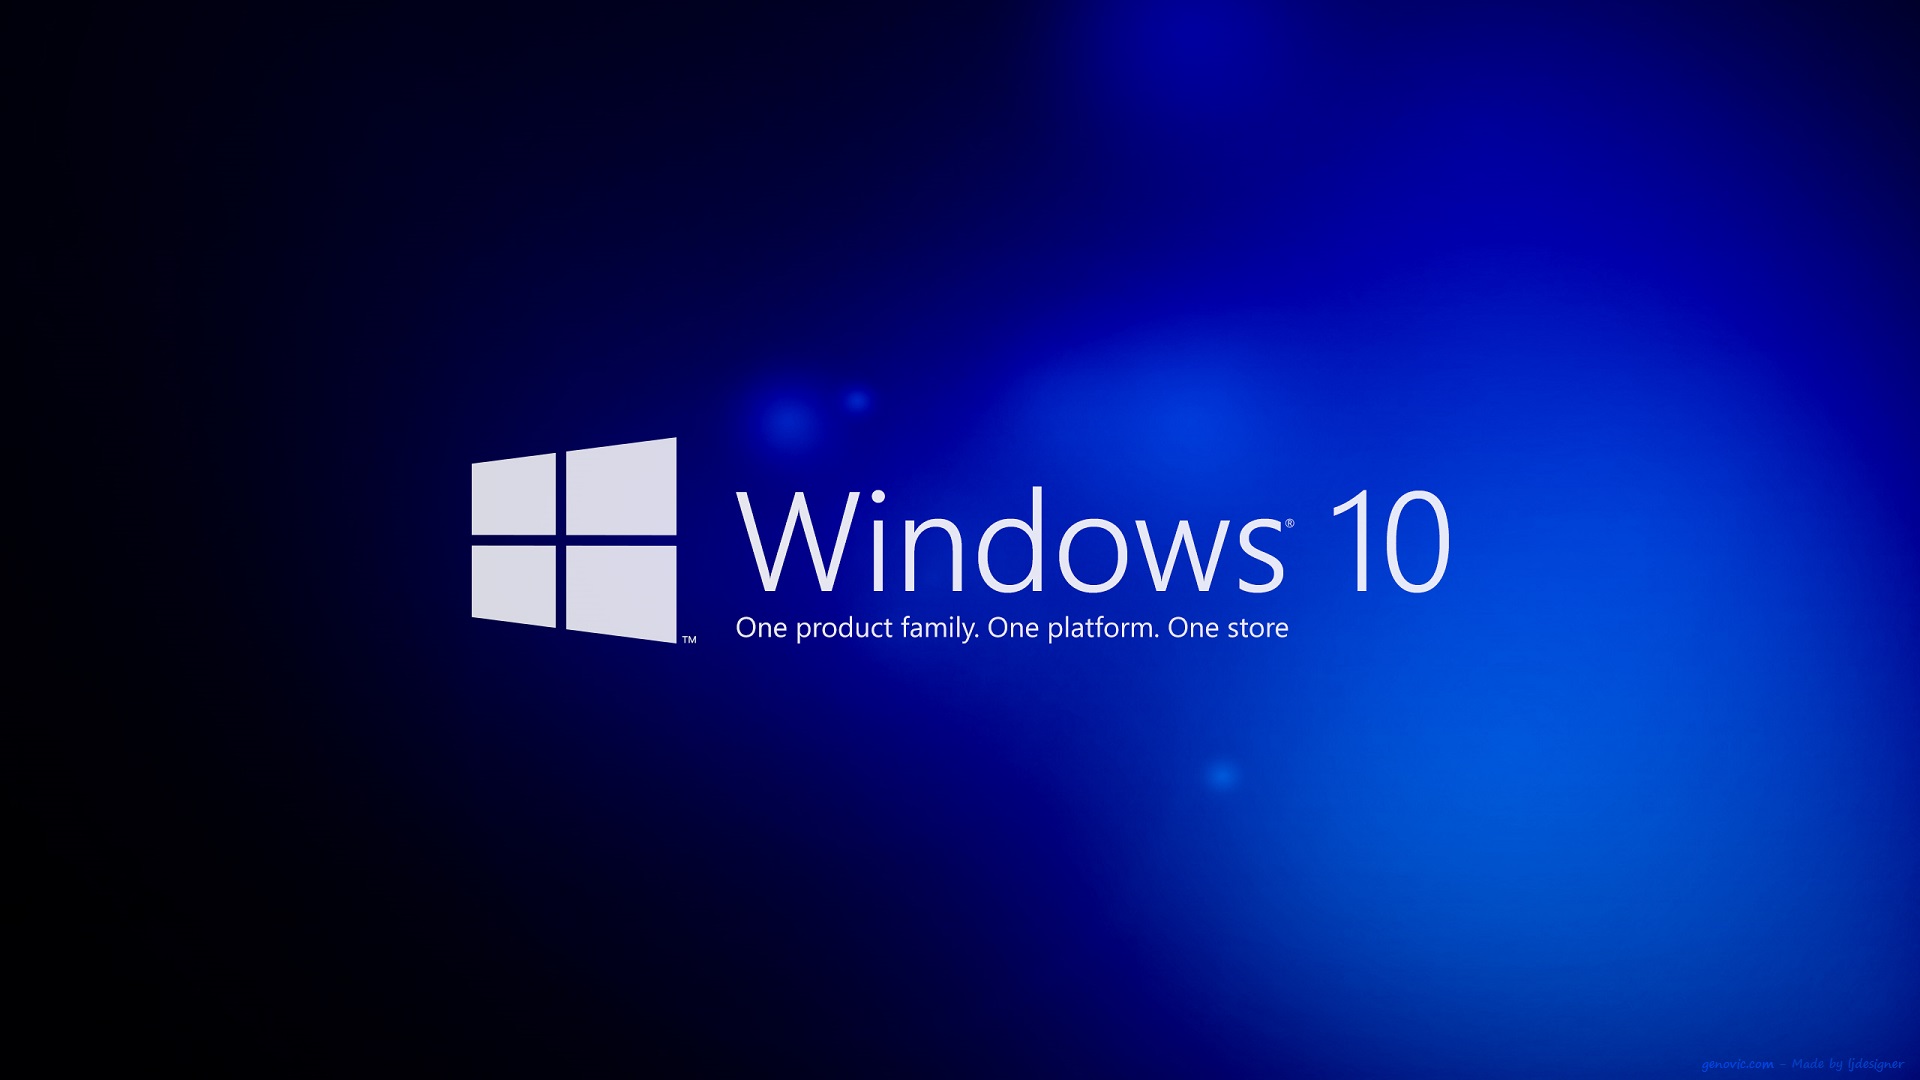 Windows 10 Pro HD wallpaper | Pxfuel